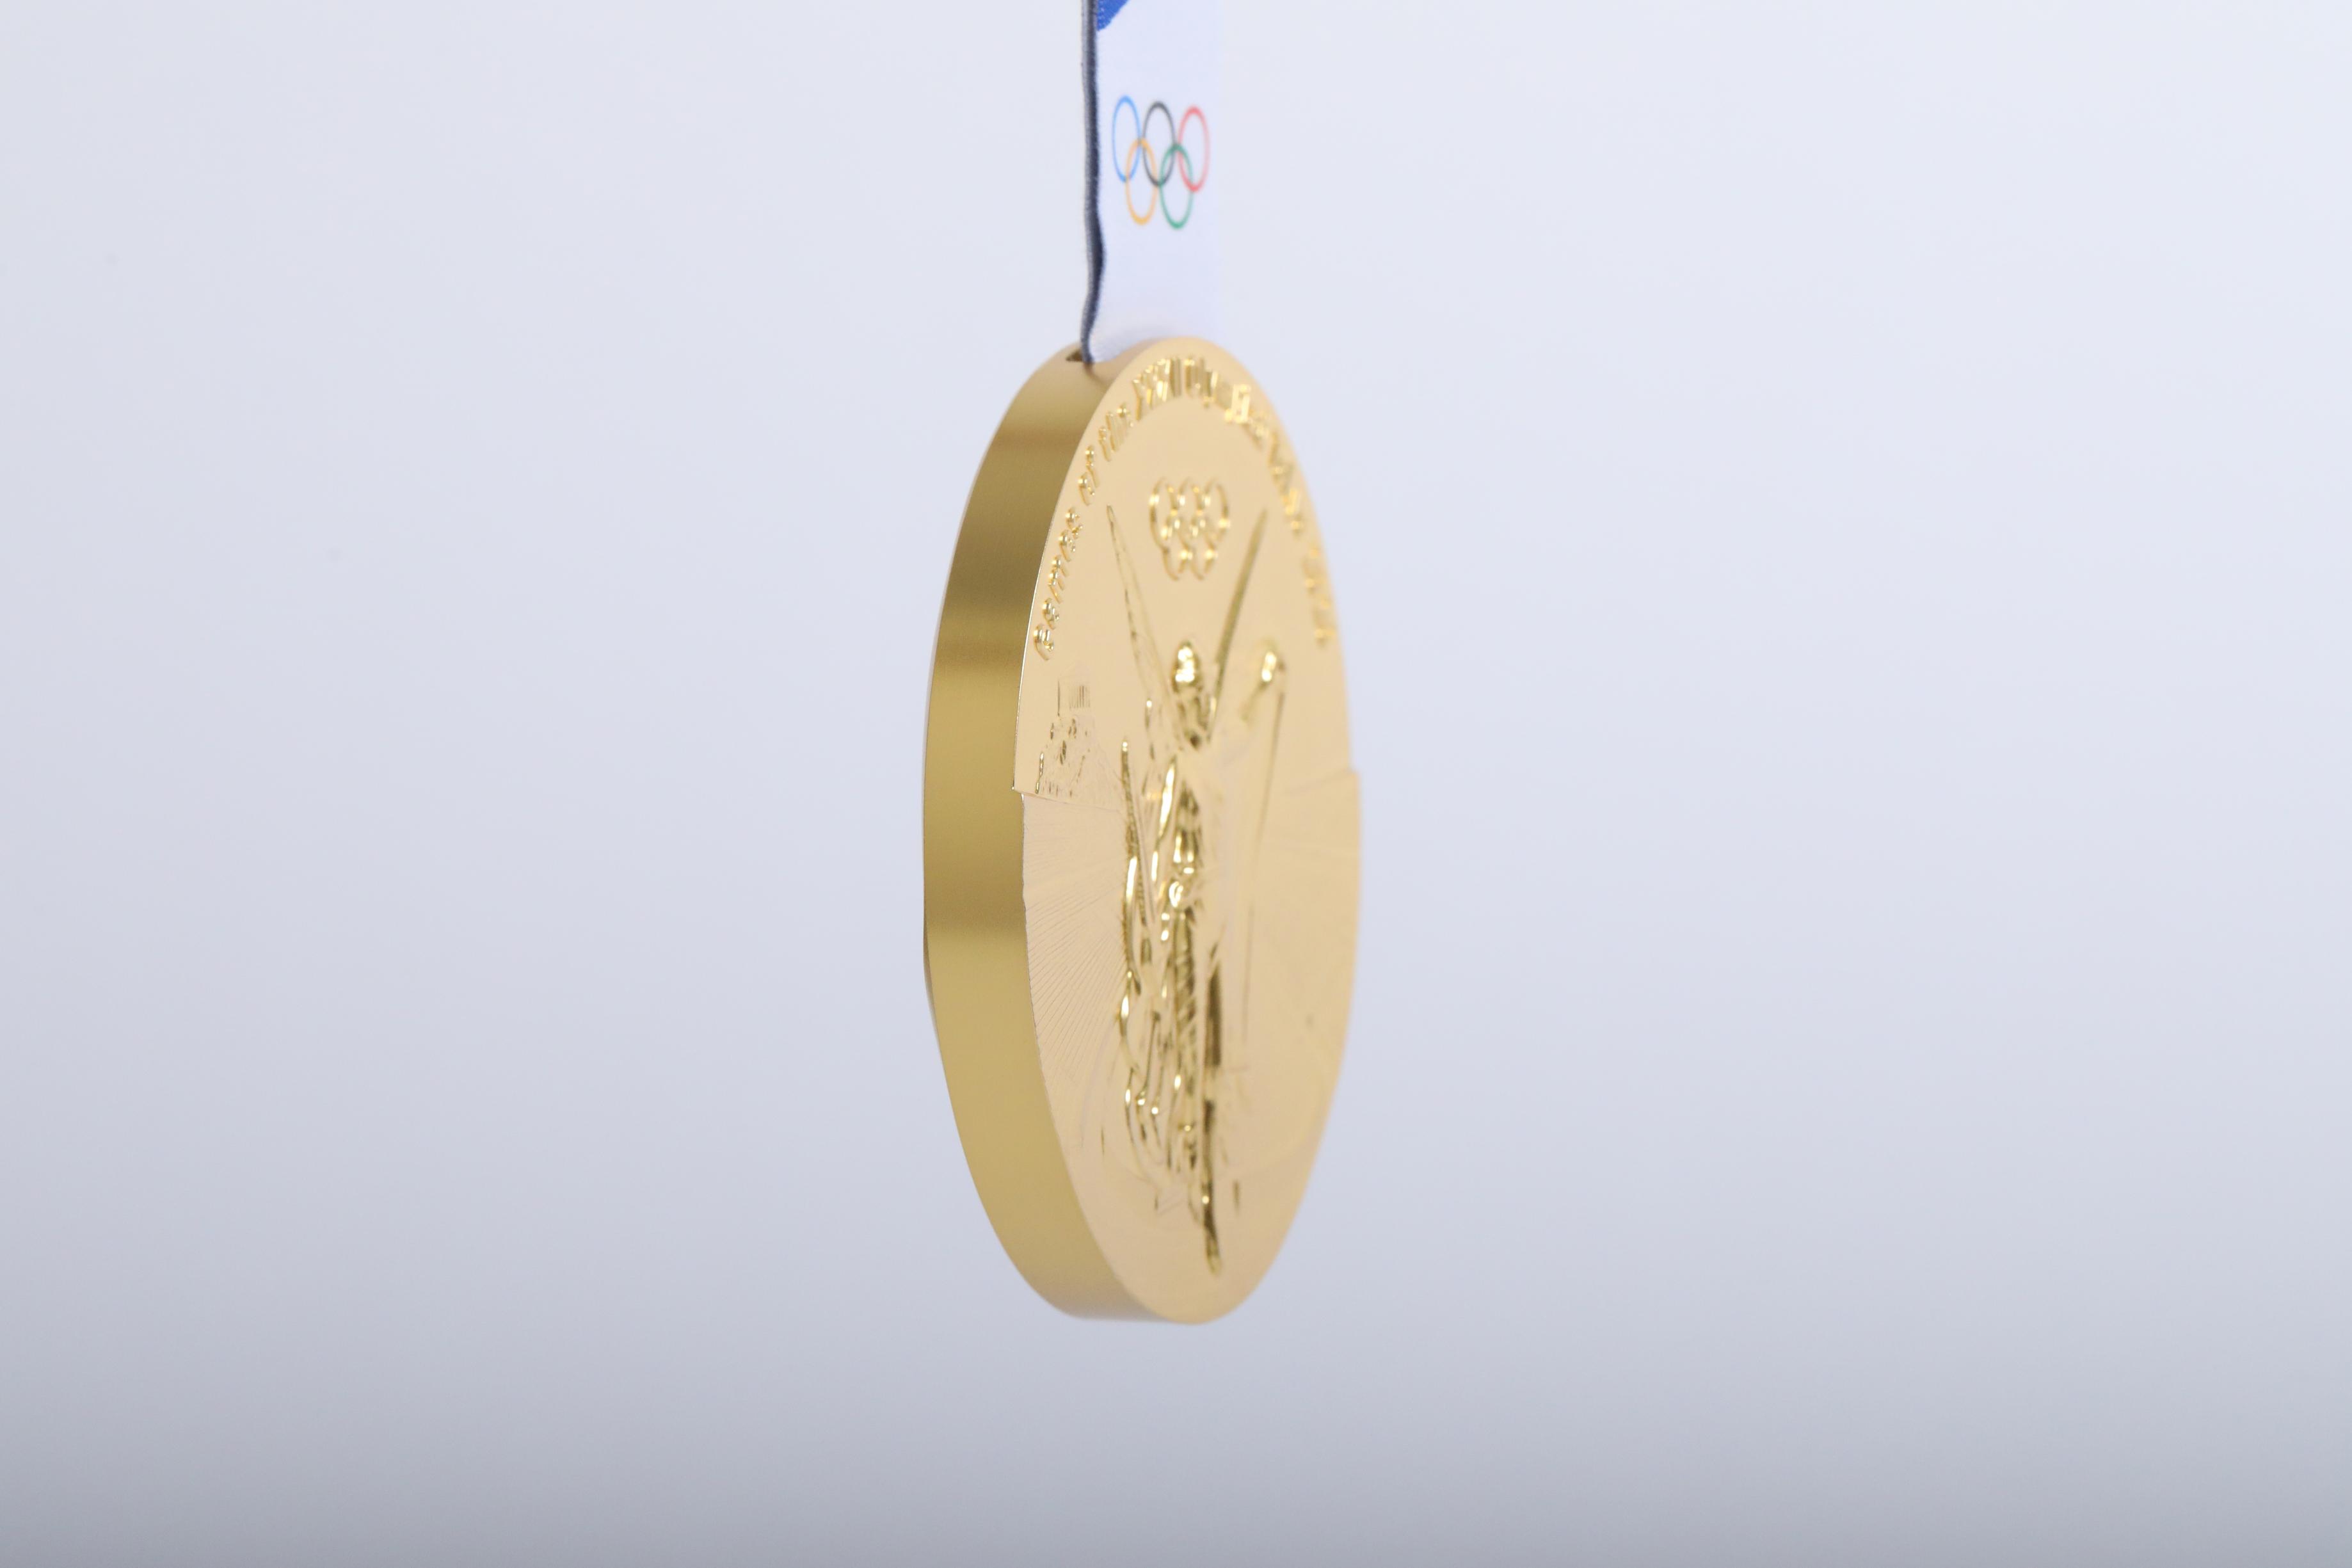 Tokyo medal olimpik Tokyo 2020